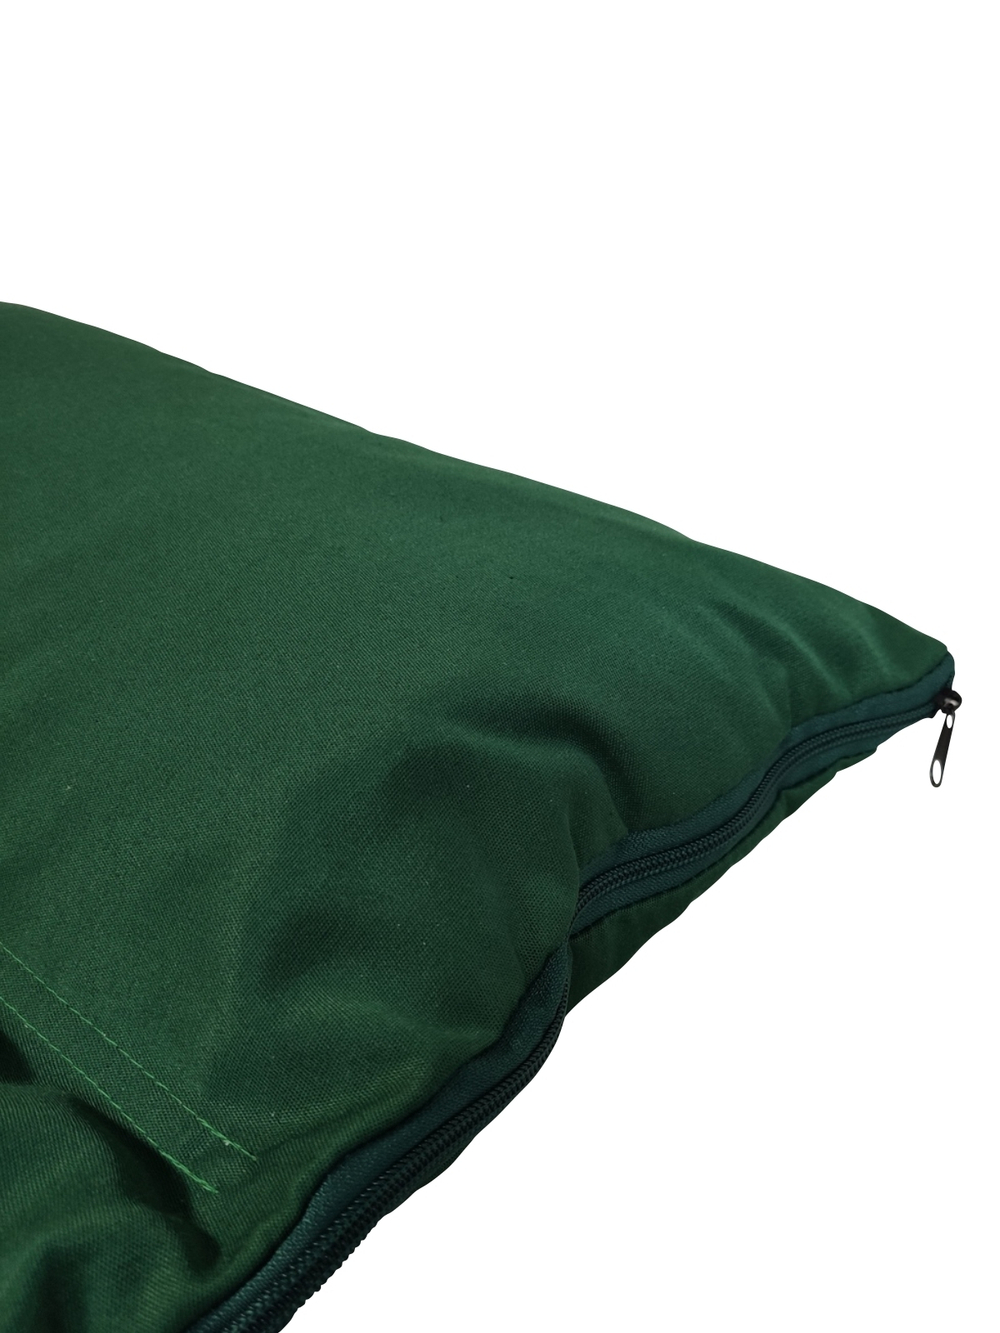 Подушка с валиком под шею 45*50 см